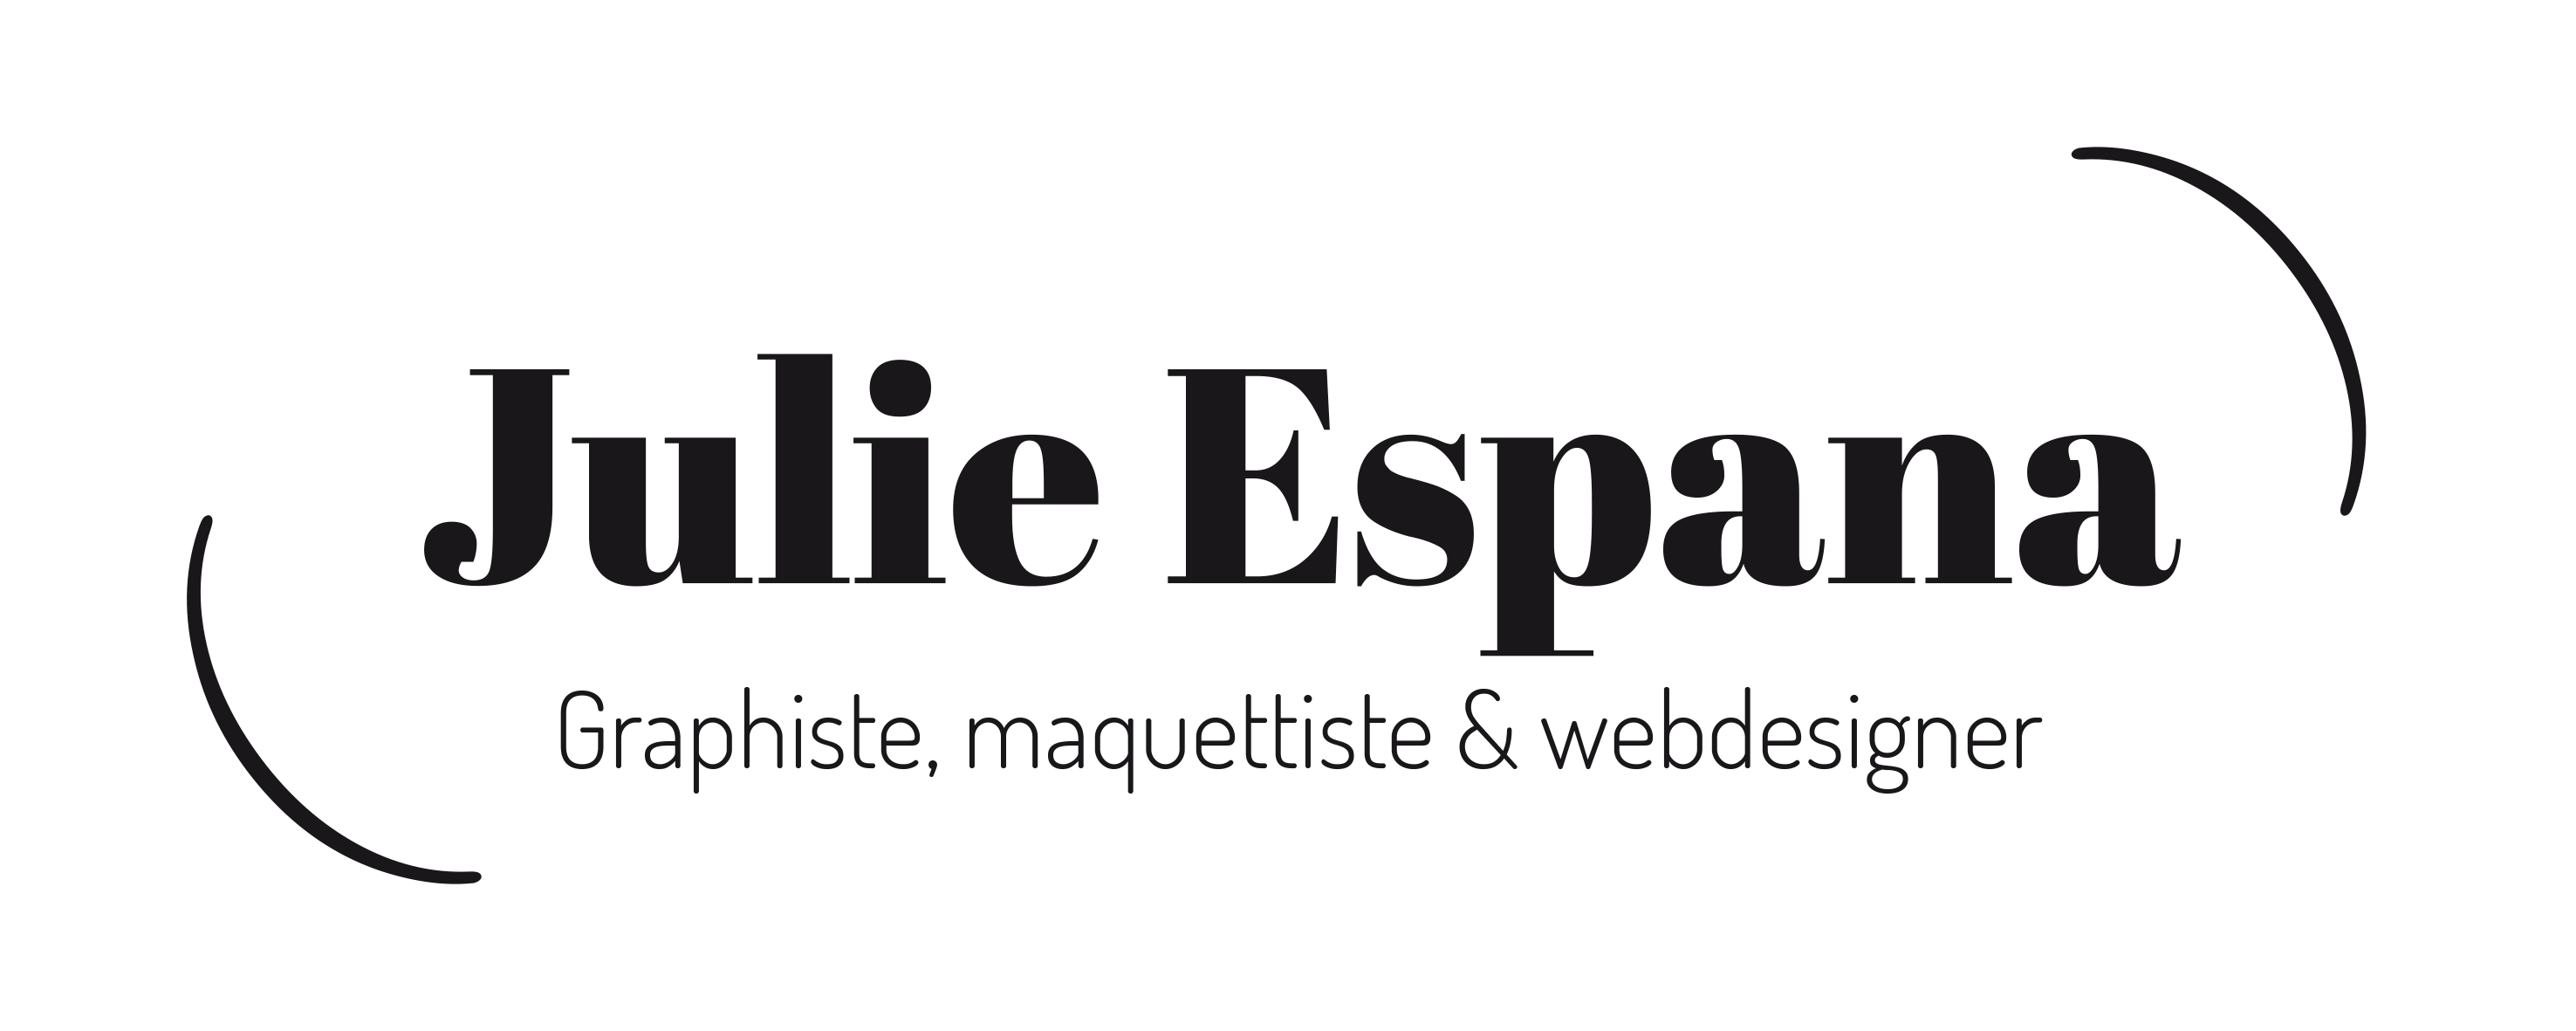 julie-espana-logo